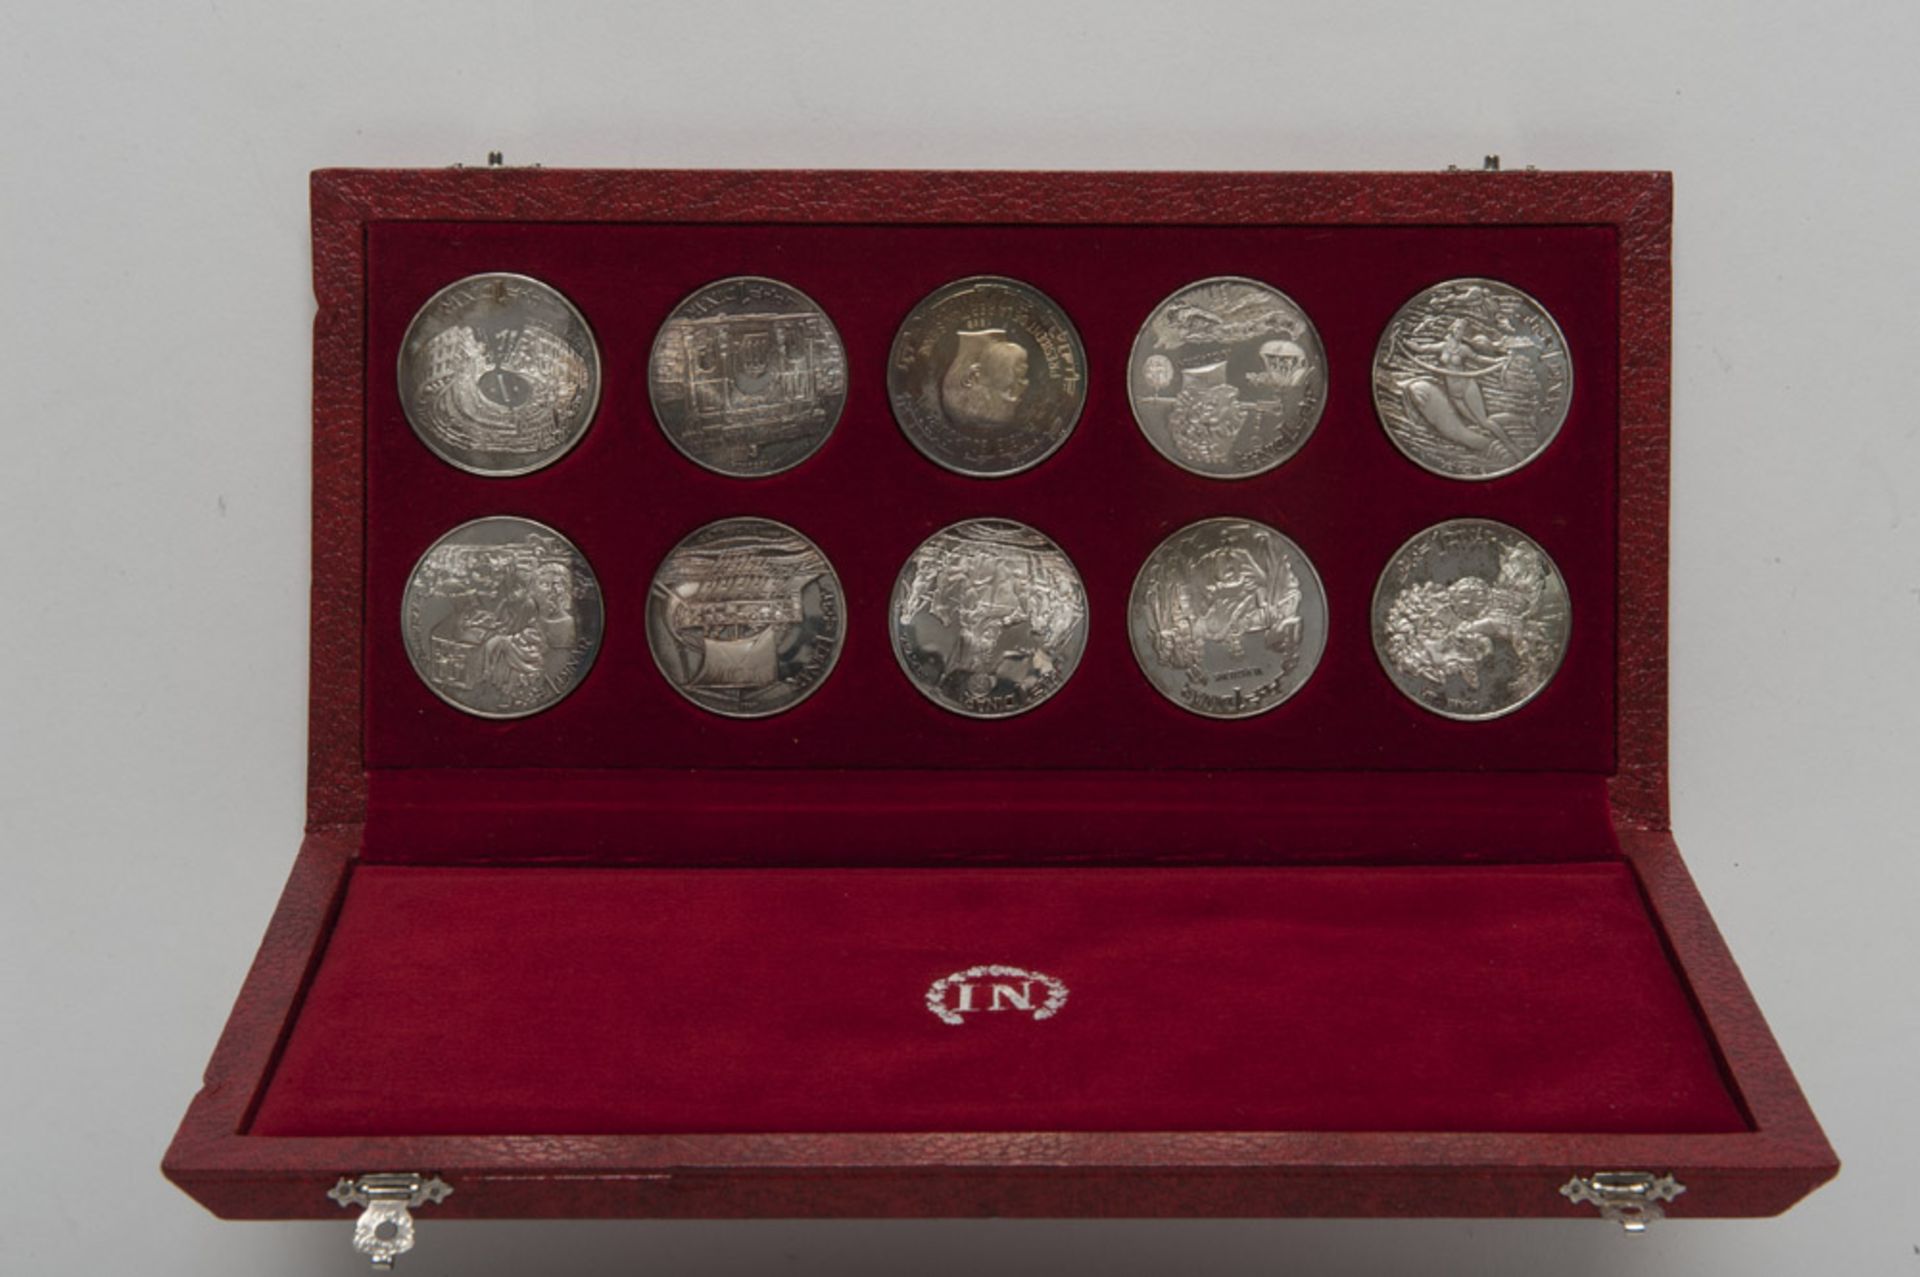 TEN SILVER COINS, TUNISIAN EDITIONS 20TH CENTURY decorated. Coins of Tunisian Dinar. Editions of the